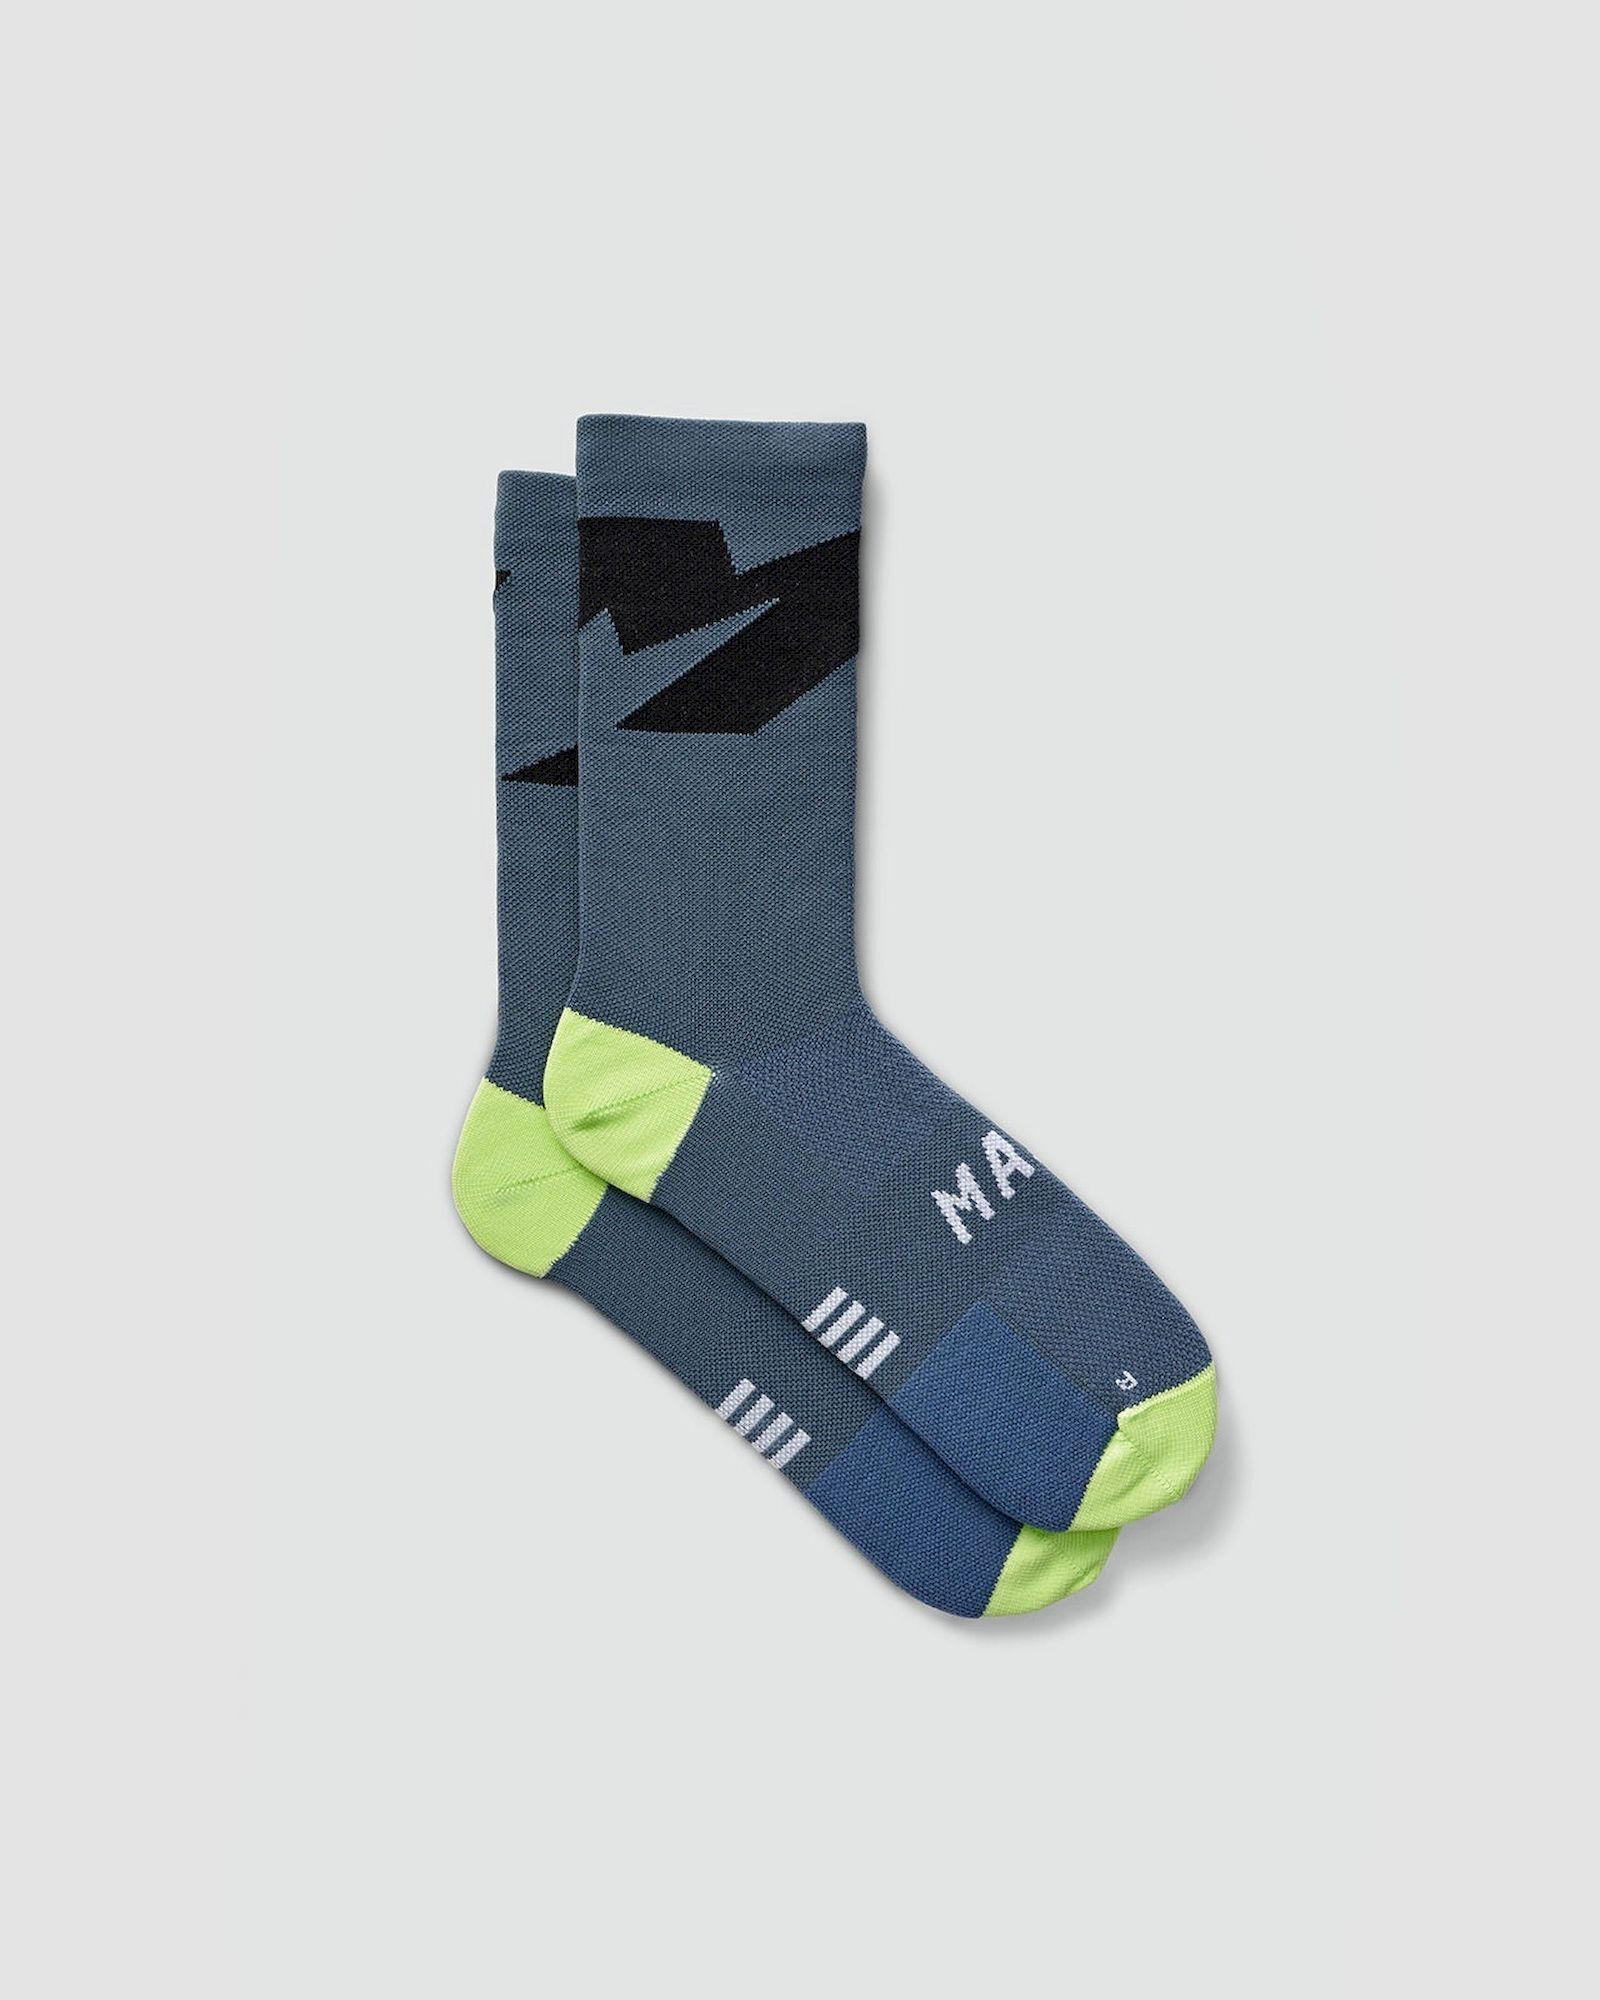 Maap Evolve Sock - Cycling socks | Hardloop